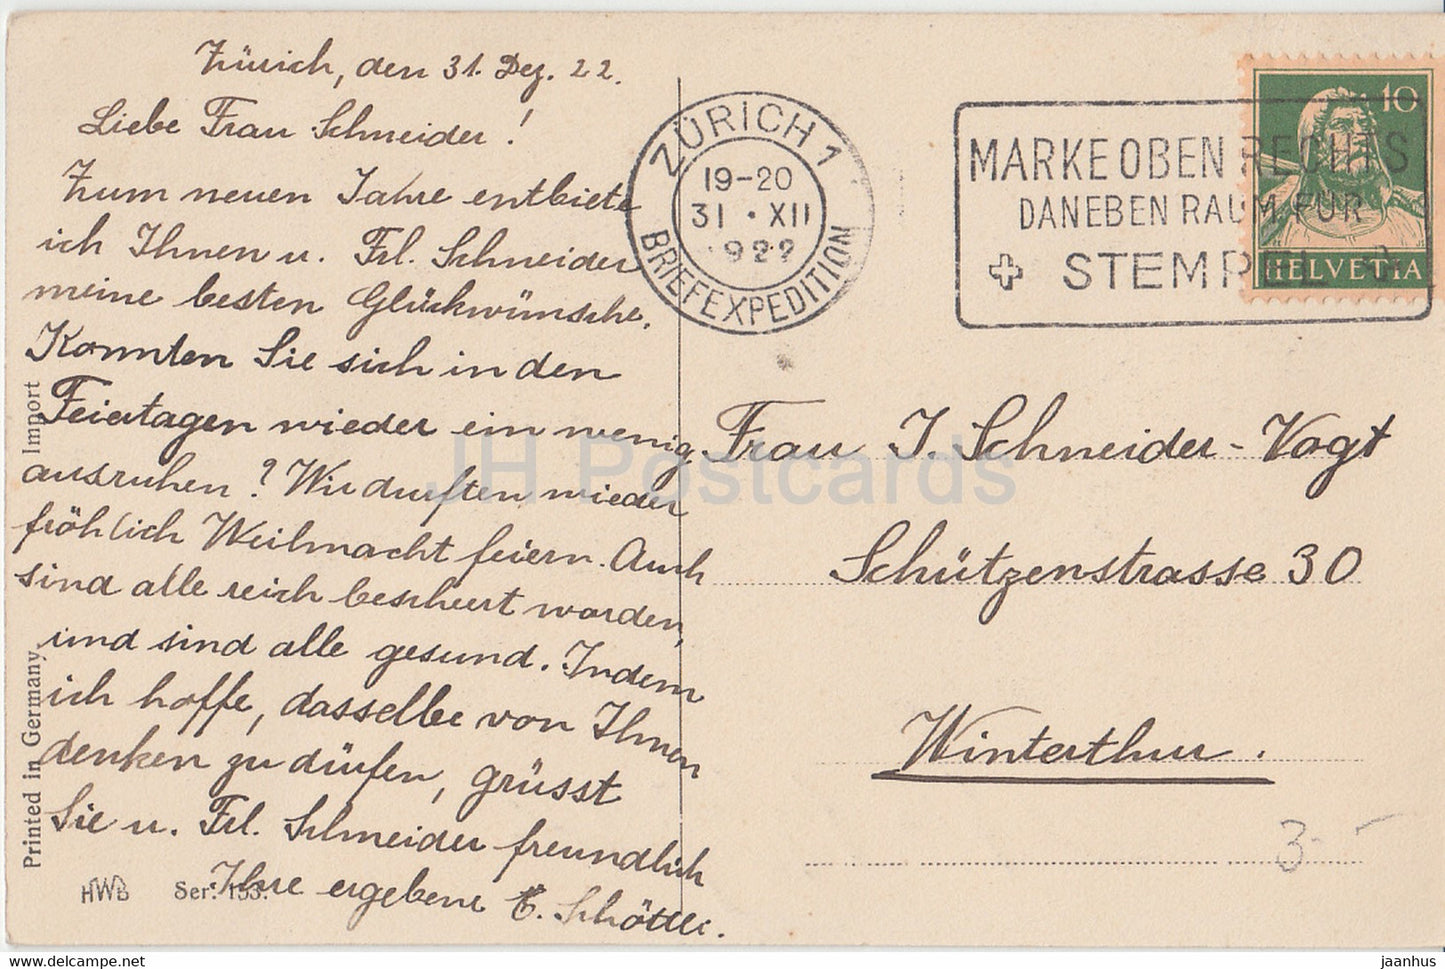 Carte de vœux du Nouvel An - Ein Frohes Neujahr - hiver - cerf - animal- HWB SER 153 - carte postale ancienne - 1922 - Allemagne - utilisé